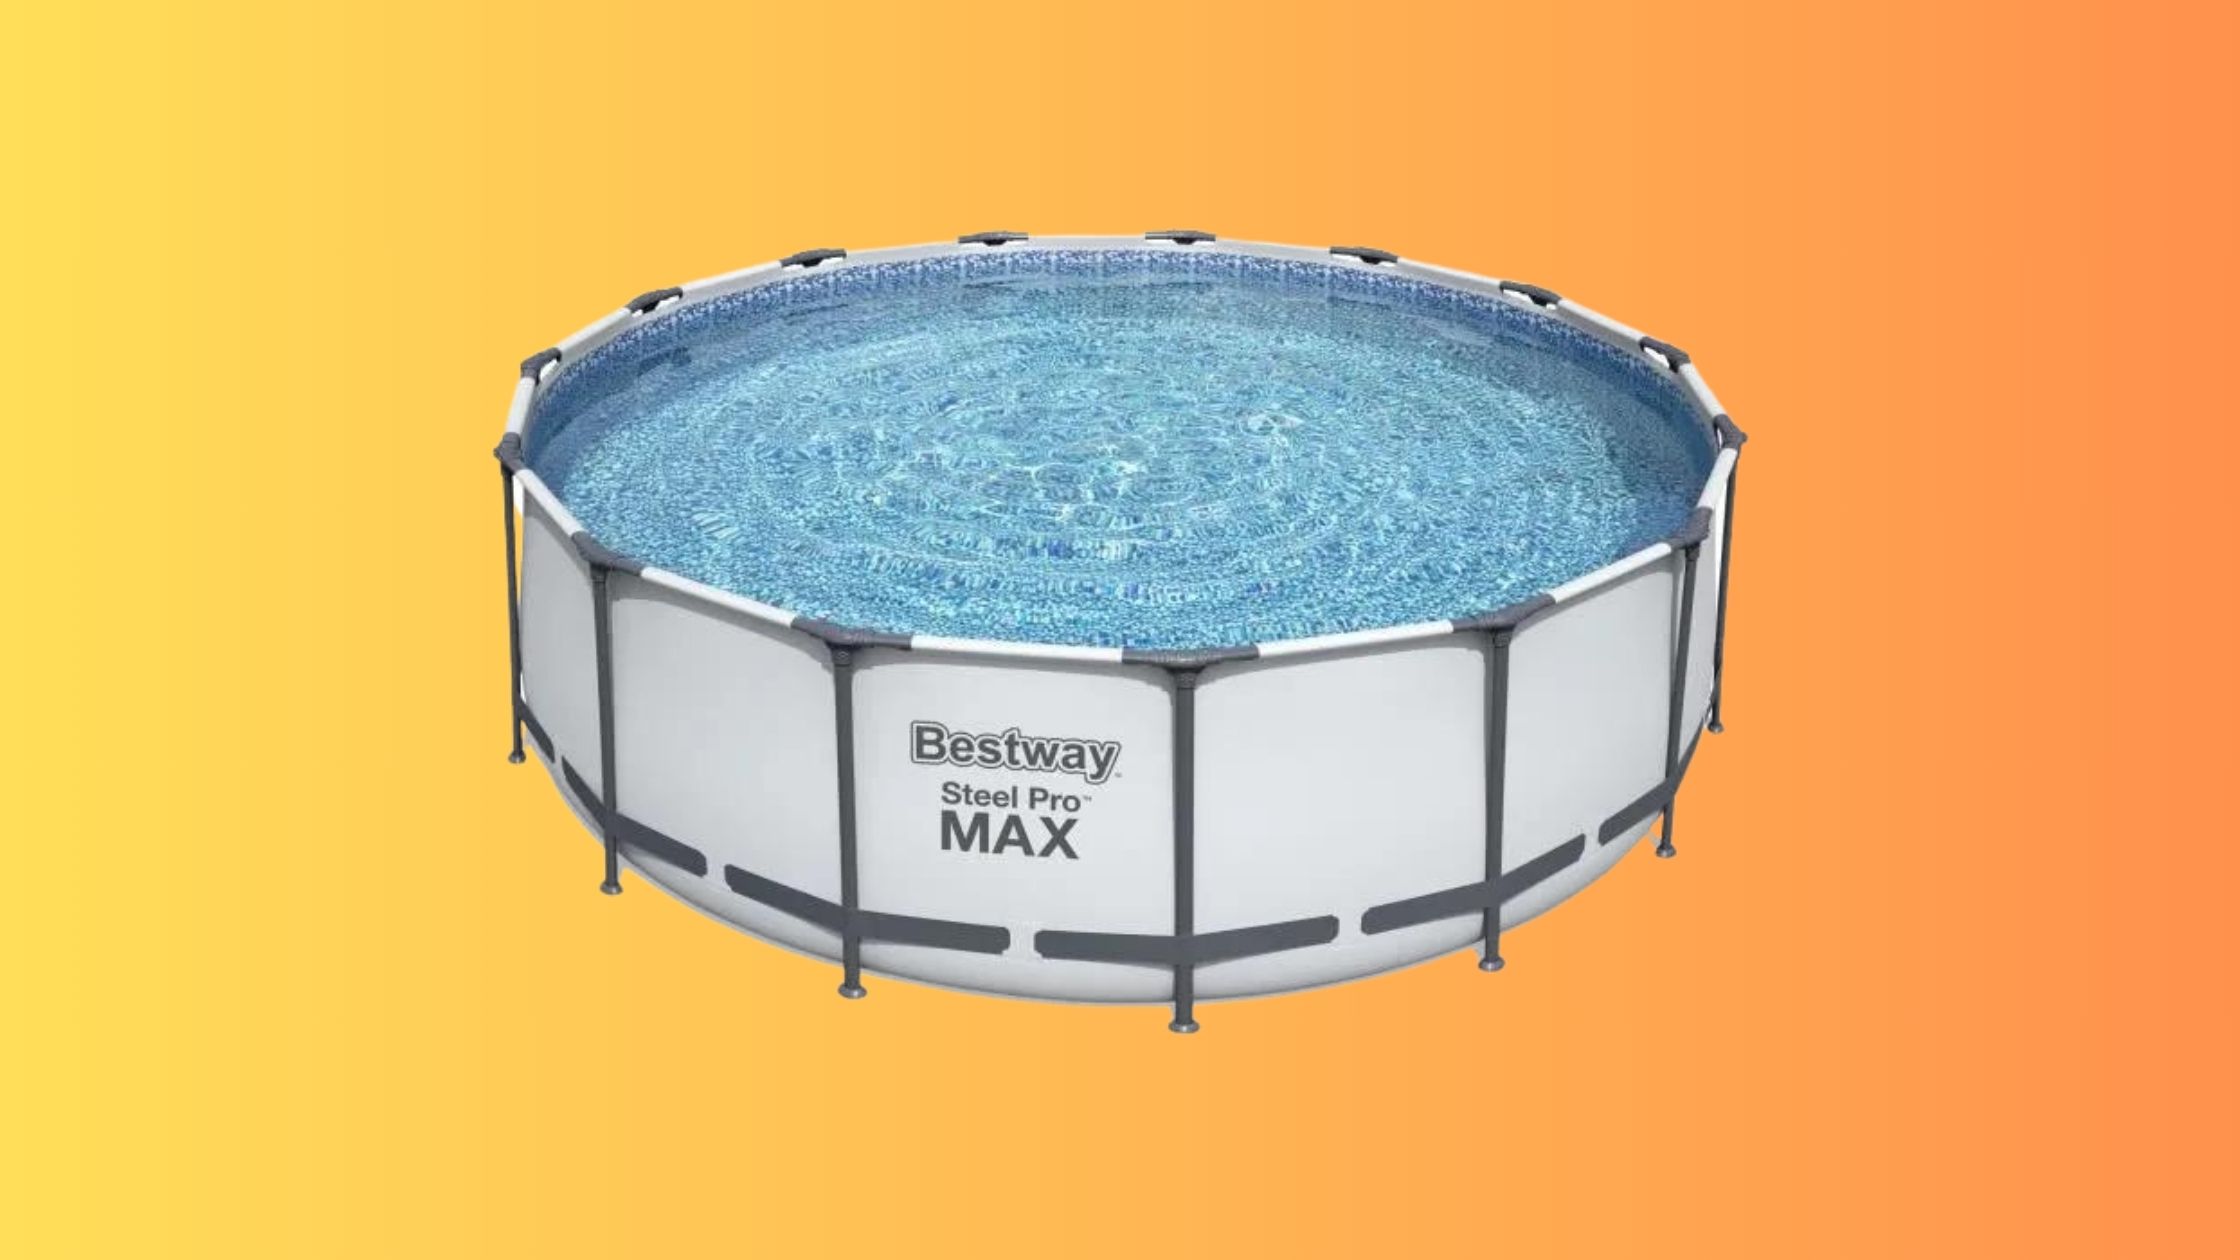 BESTWAY Steel Pro Max : -100 € sur cette piscine hors sol destinée aux familles